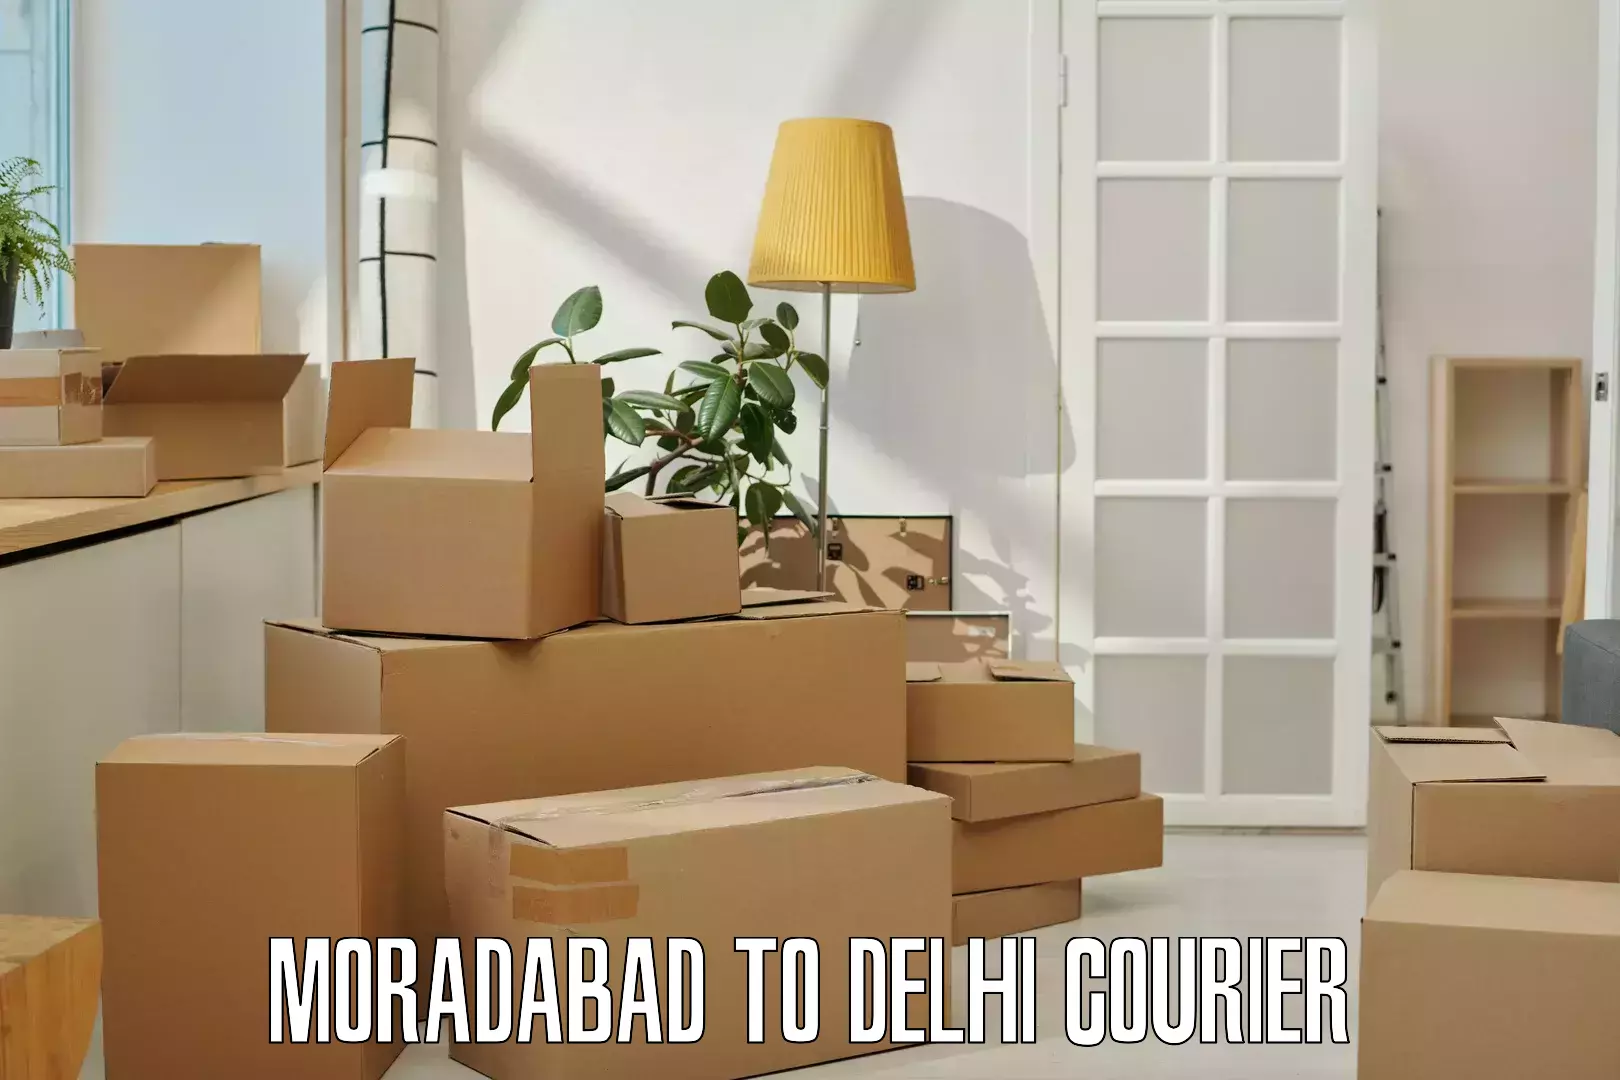 Medical delivery services Moradabad to Delhi Technological University DTU